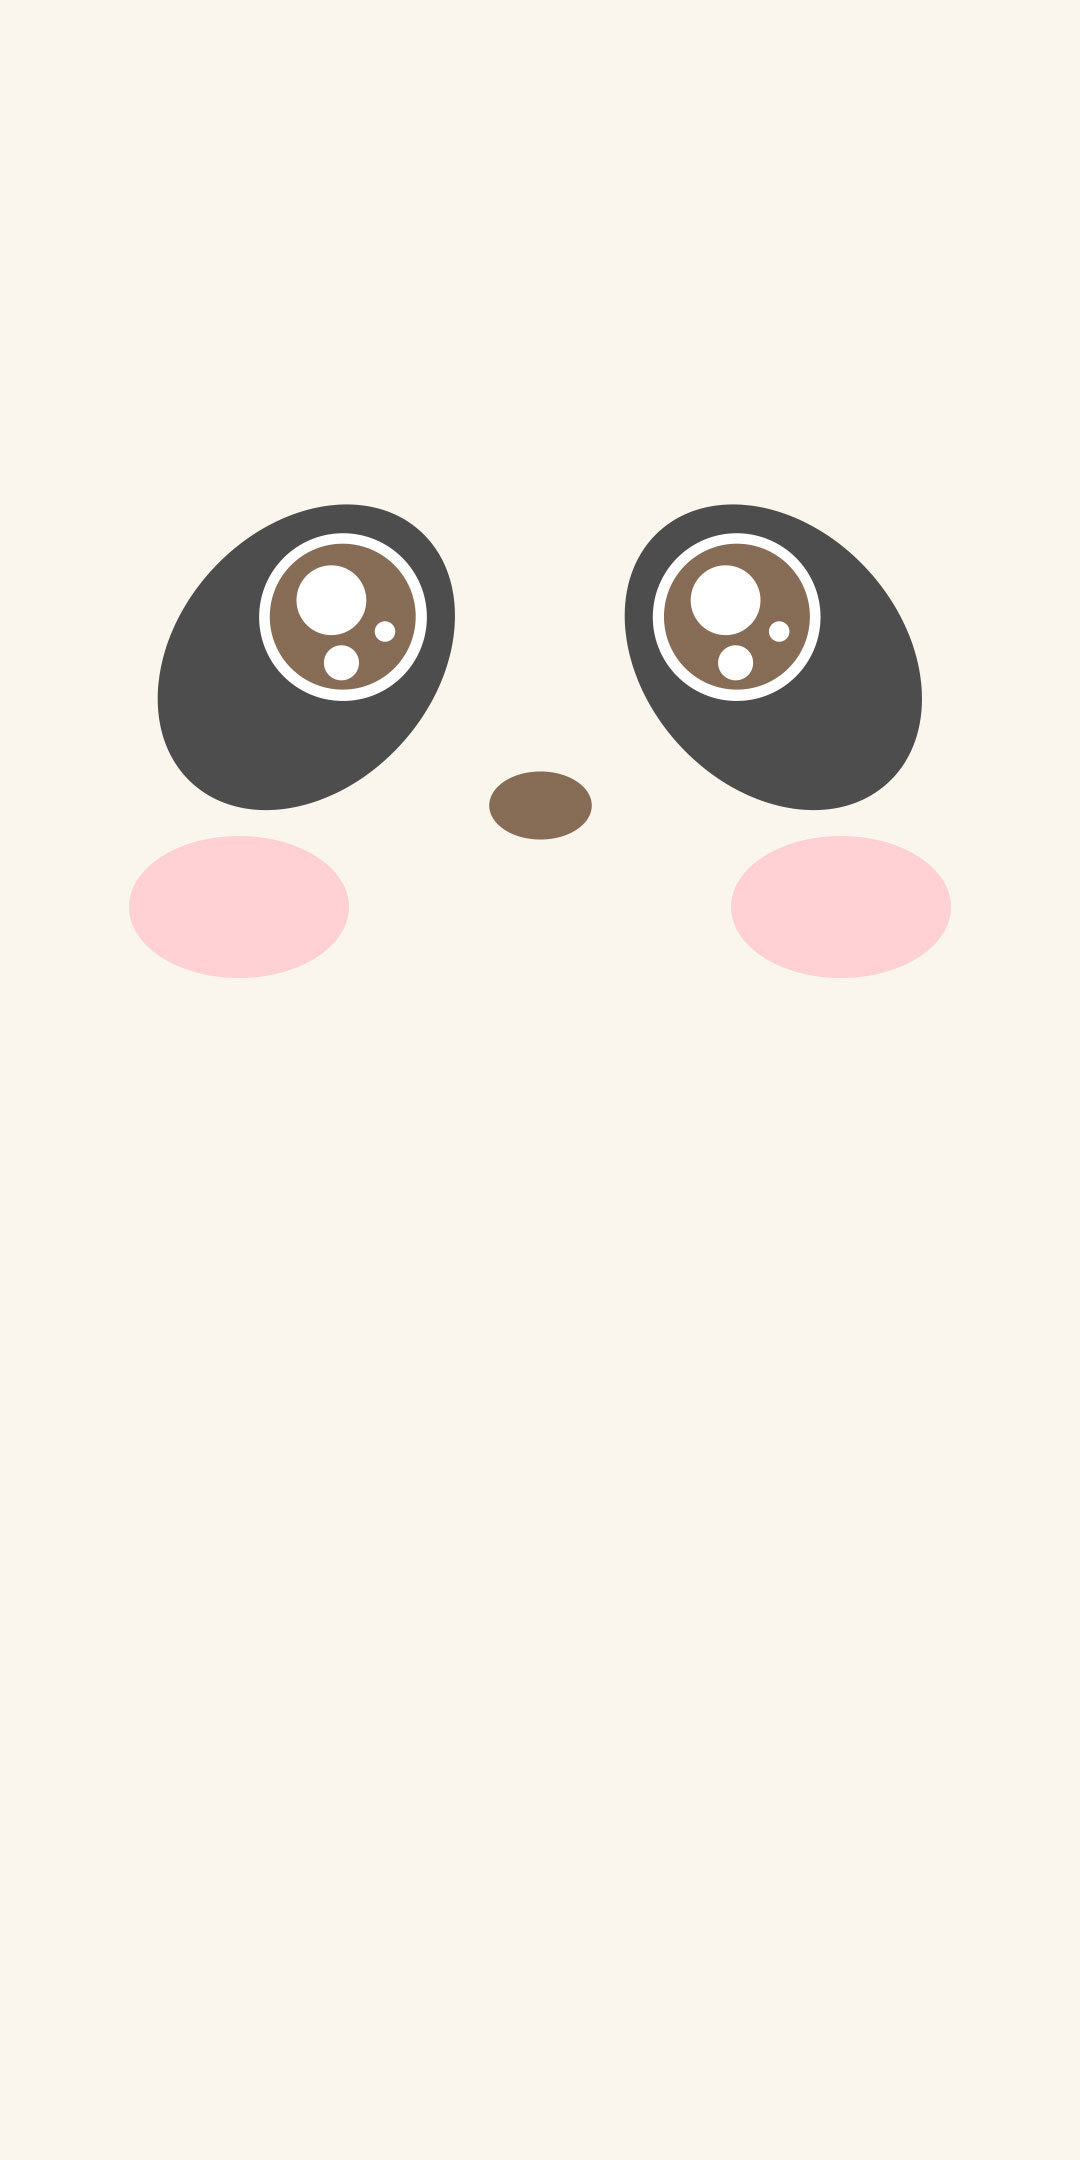 粉红色熊猫头 向量例证. 插画 包括有 纸张, 逗人喜爱, 织品, 植物群, 子项, 本质, 熊猫, 重点 - 164729289